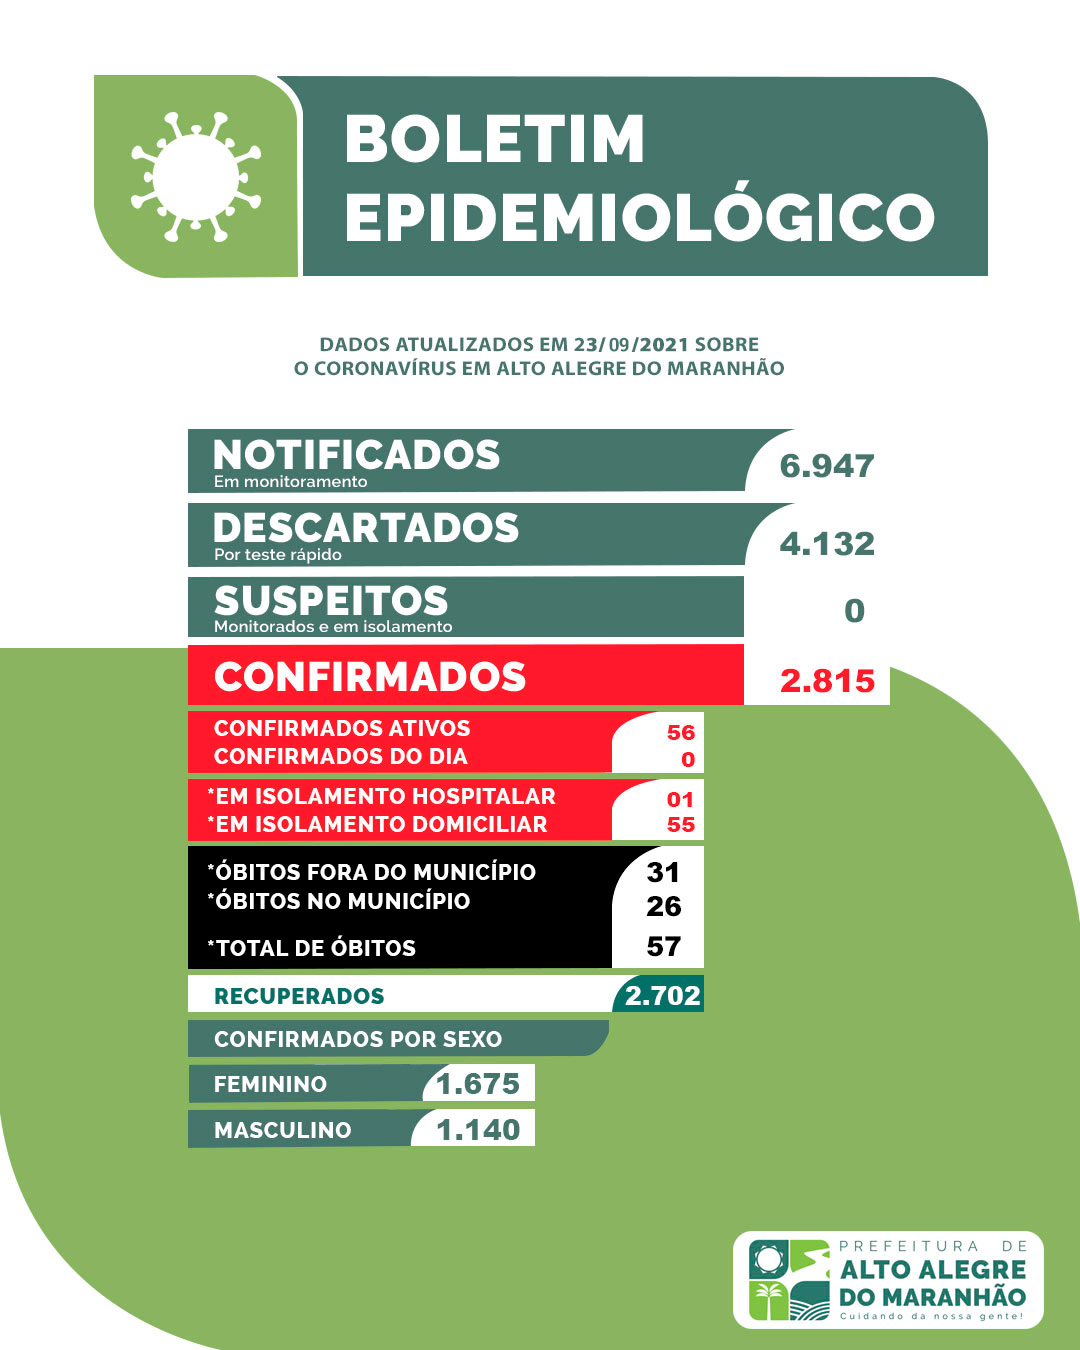 [Dados do Covid-19] Boletim epidemiológico atualizado de Alto Alegre do Maranhão